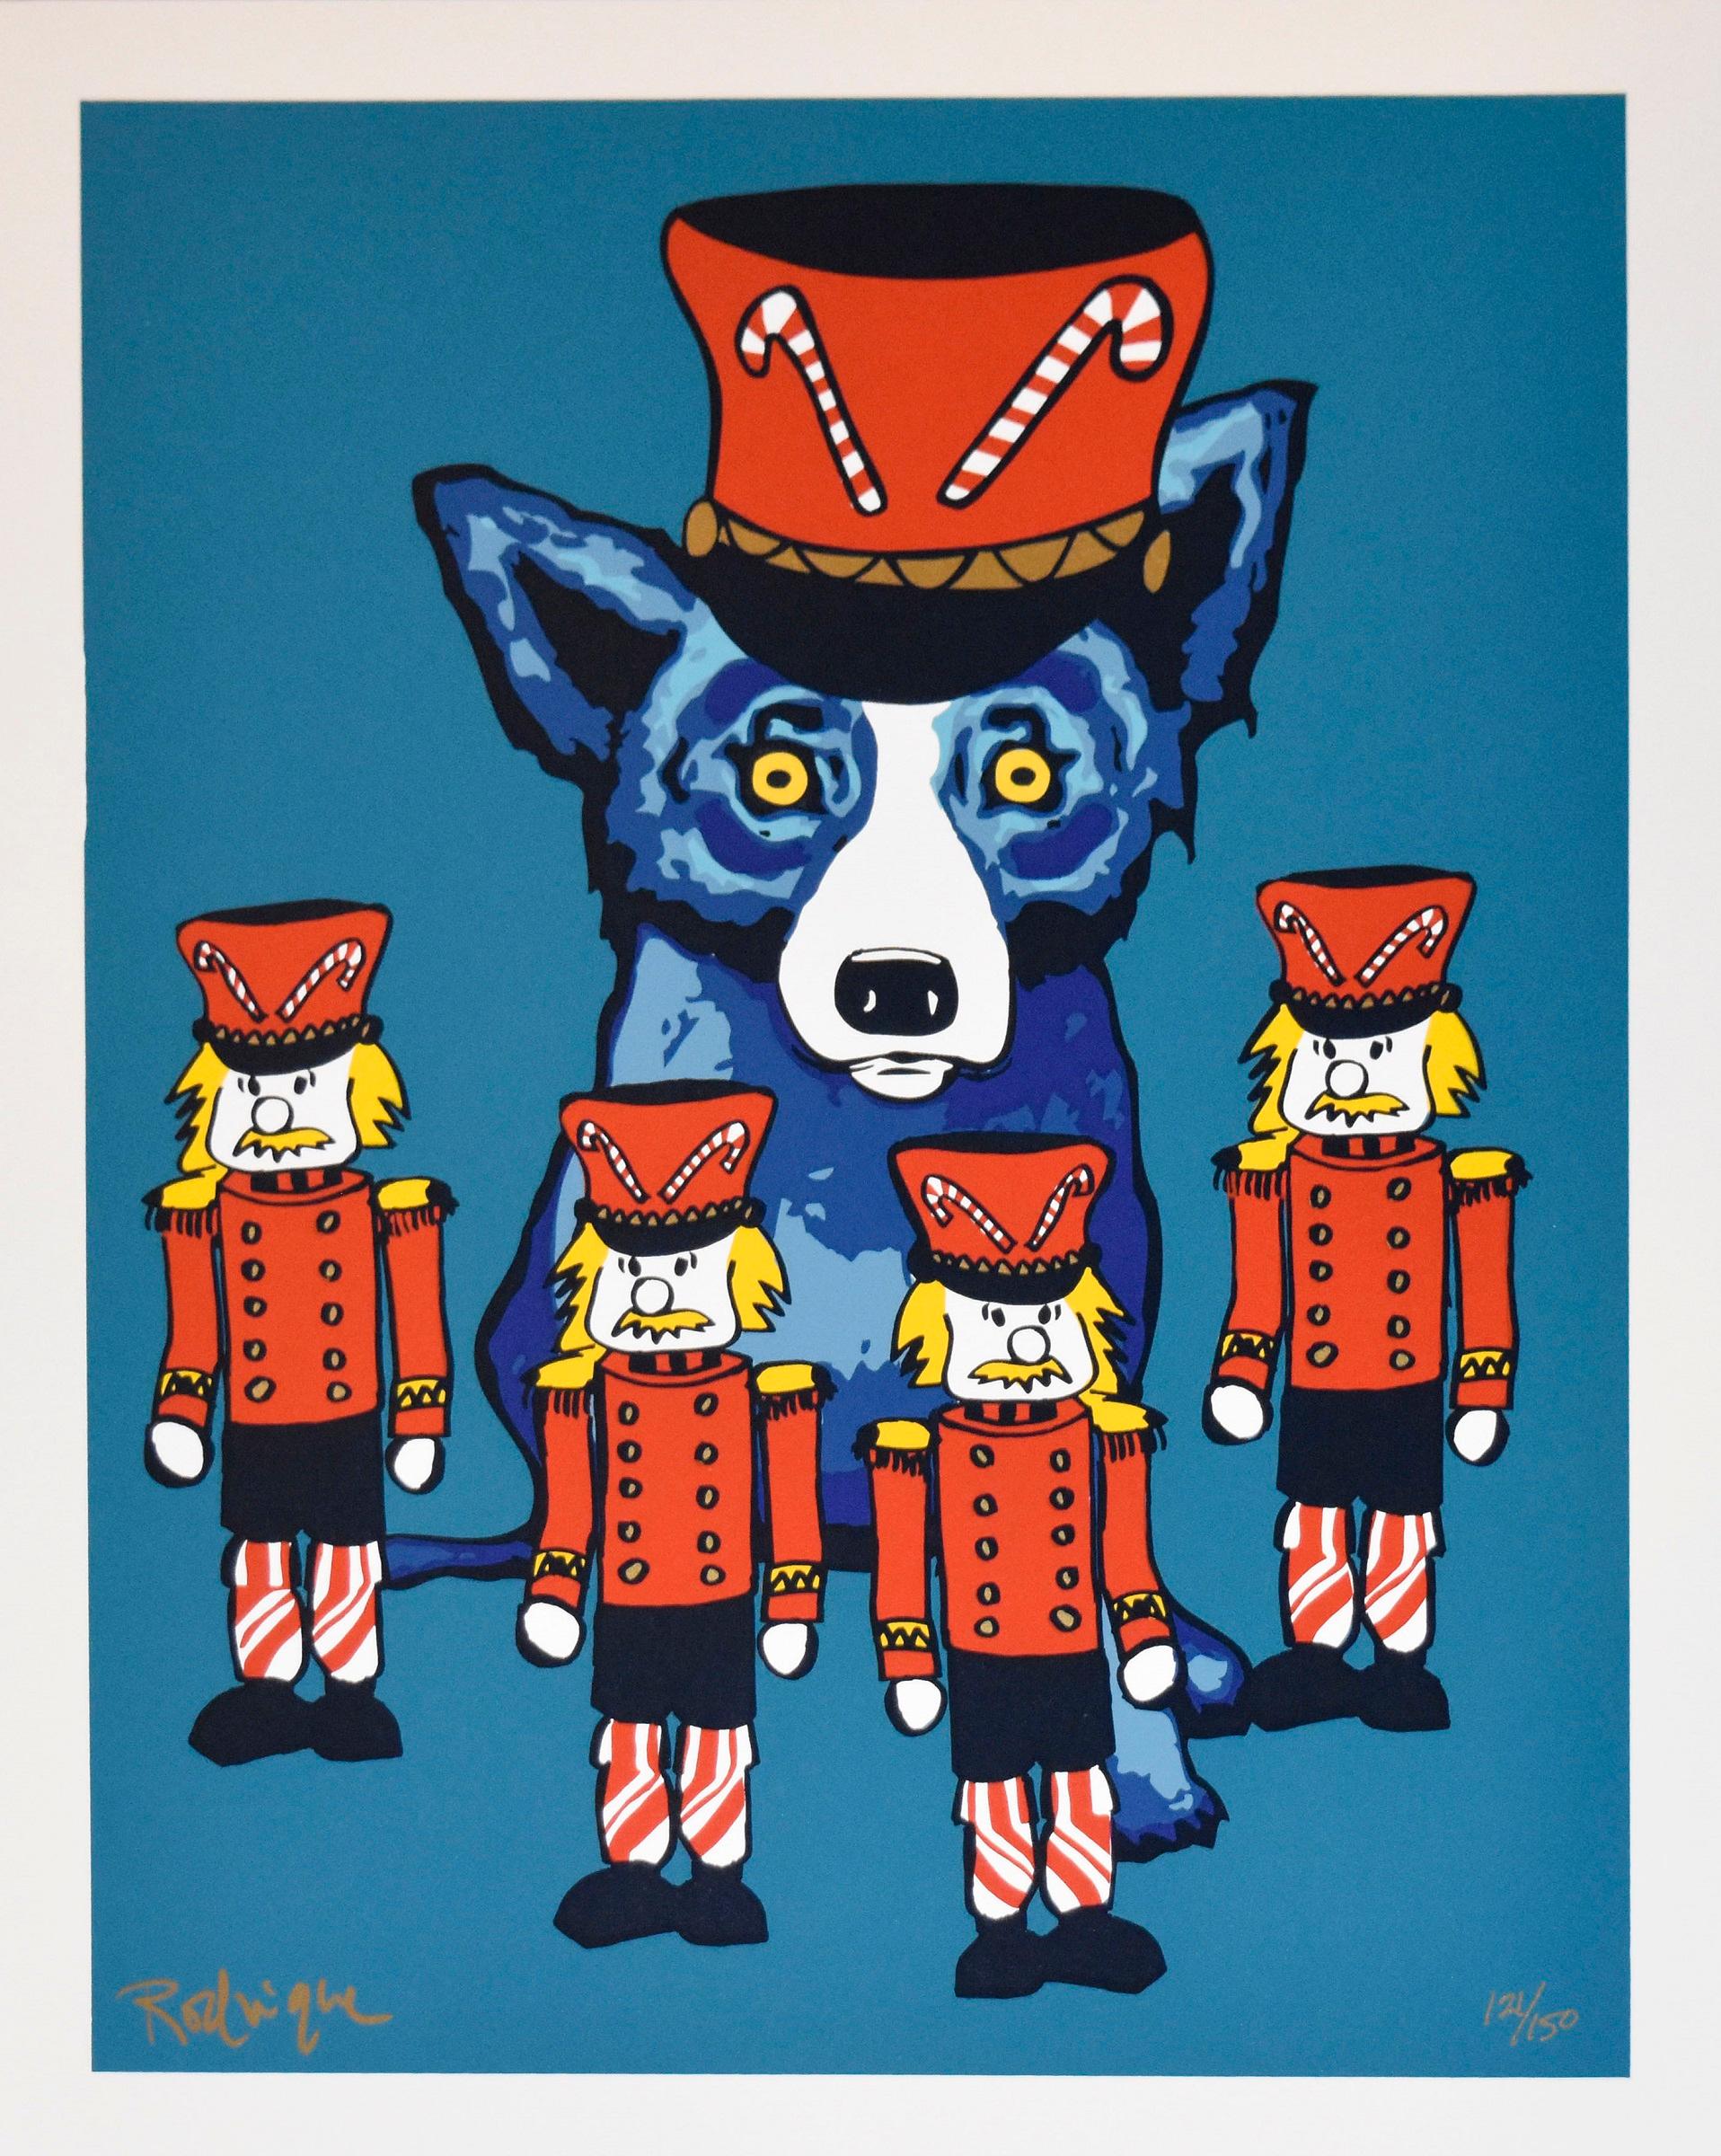 George Rodrigue Animal Print – Soldier Boy - Signierter Siebdruck Blauer Hund Holiday Print Verkauf